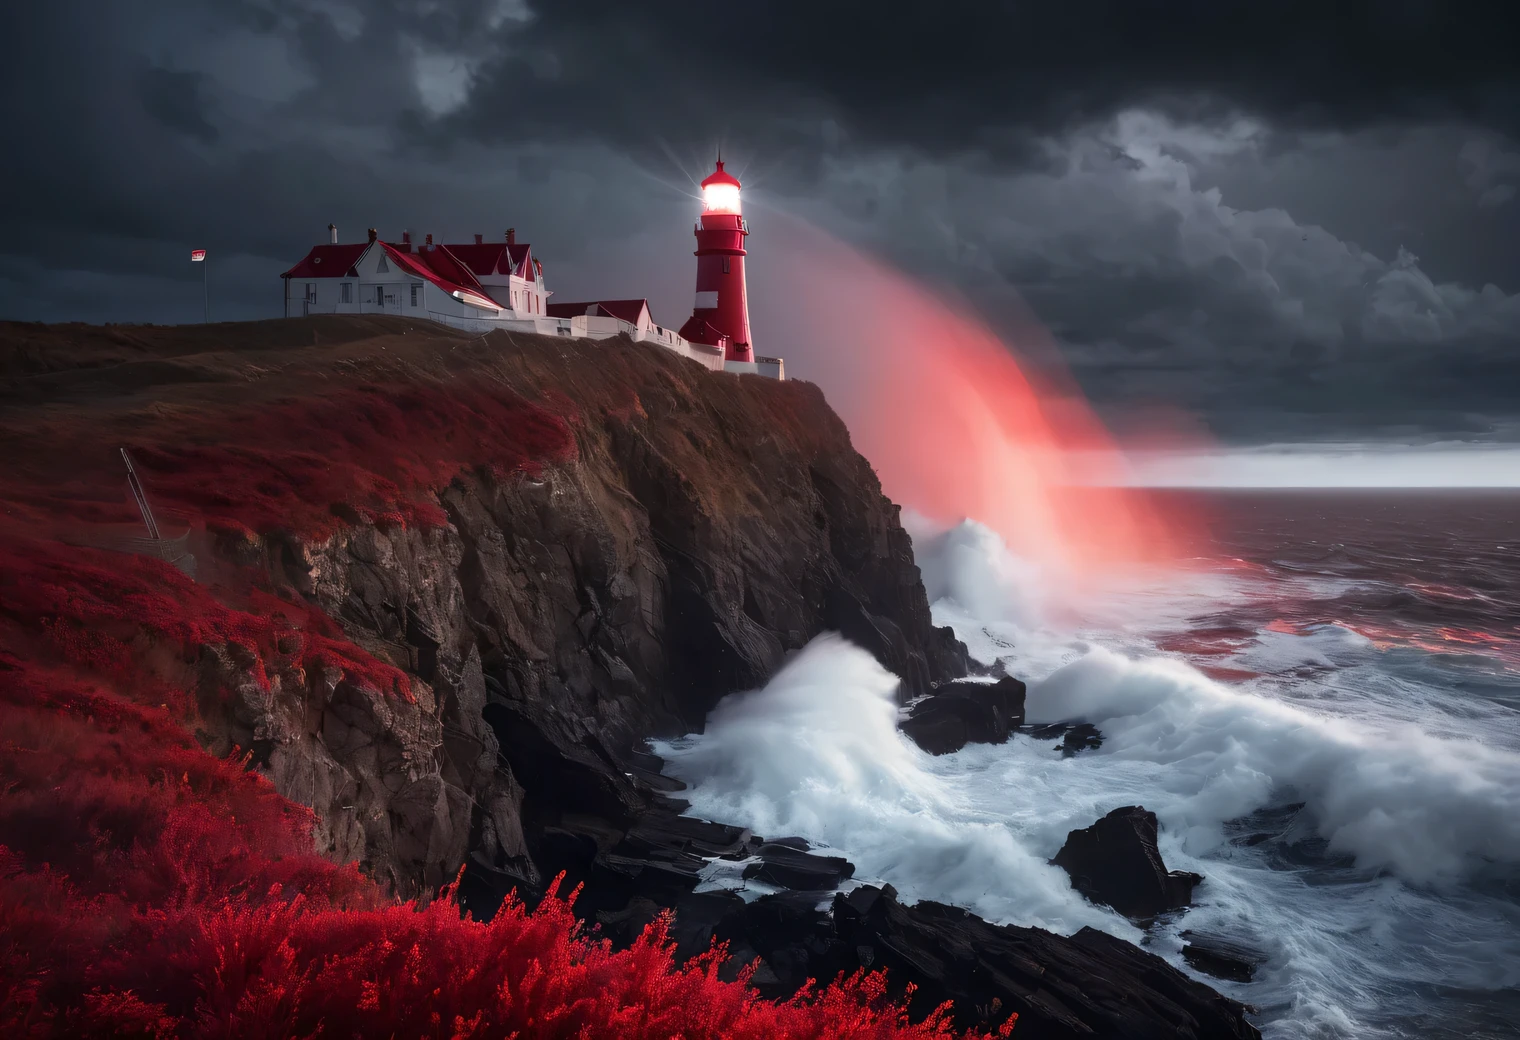 art rouge, Peinture réaliste dans les tons rouges., (Brouillard:1.2), (the wind carries mer spray and foam:1.7), the dark Une tempêtey sky is illuminated by the red light of the lighthouse, effet de double exposition, (1 Phare au bord d&#39;une falaise:1.5 s&#39;allume en rouge:1.3505), mer, Fort (Une tempête:1.3050), Une tempêtey wind:1.250), rétroéclairage rouge, (tracé laser:1.2), (effet Tyndall:1.4055 poutres de phare:1.4), détail élevé, Une tempête haze, lissage des textures, contour flou, palette rouge